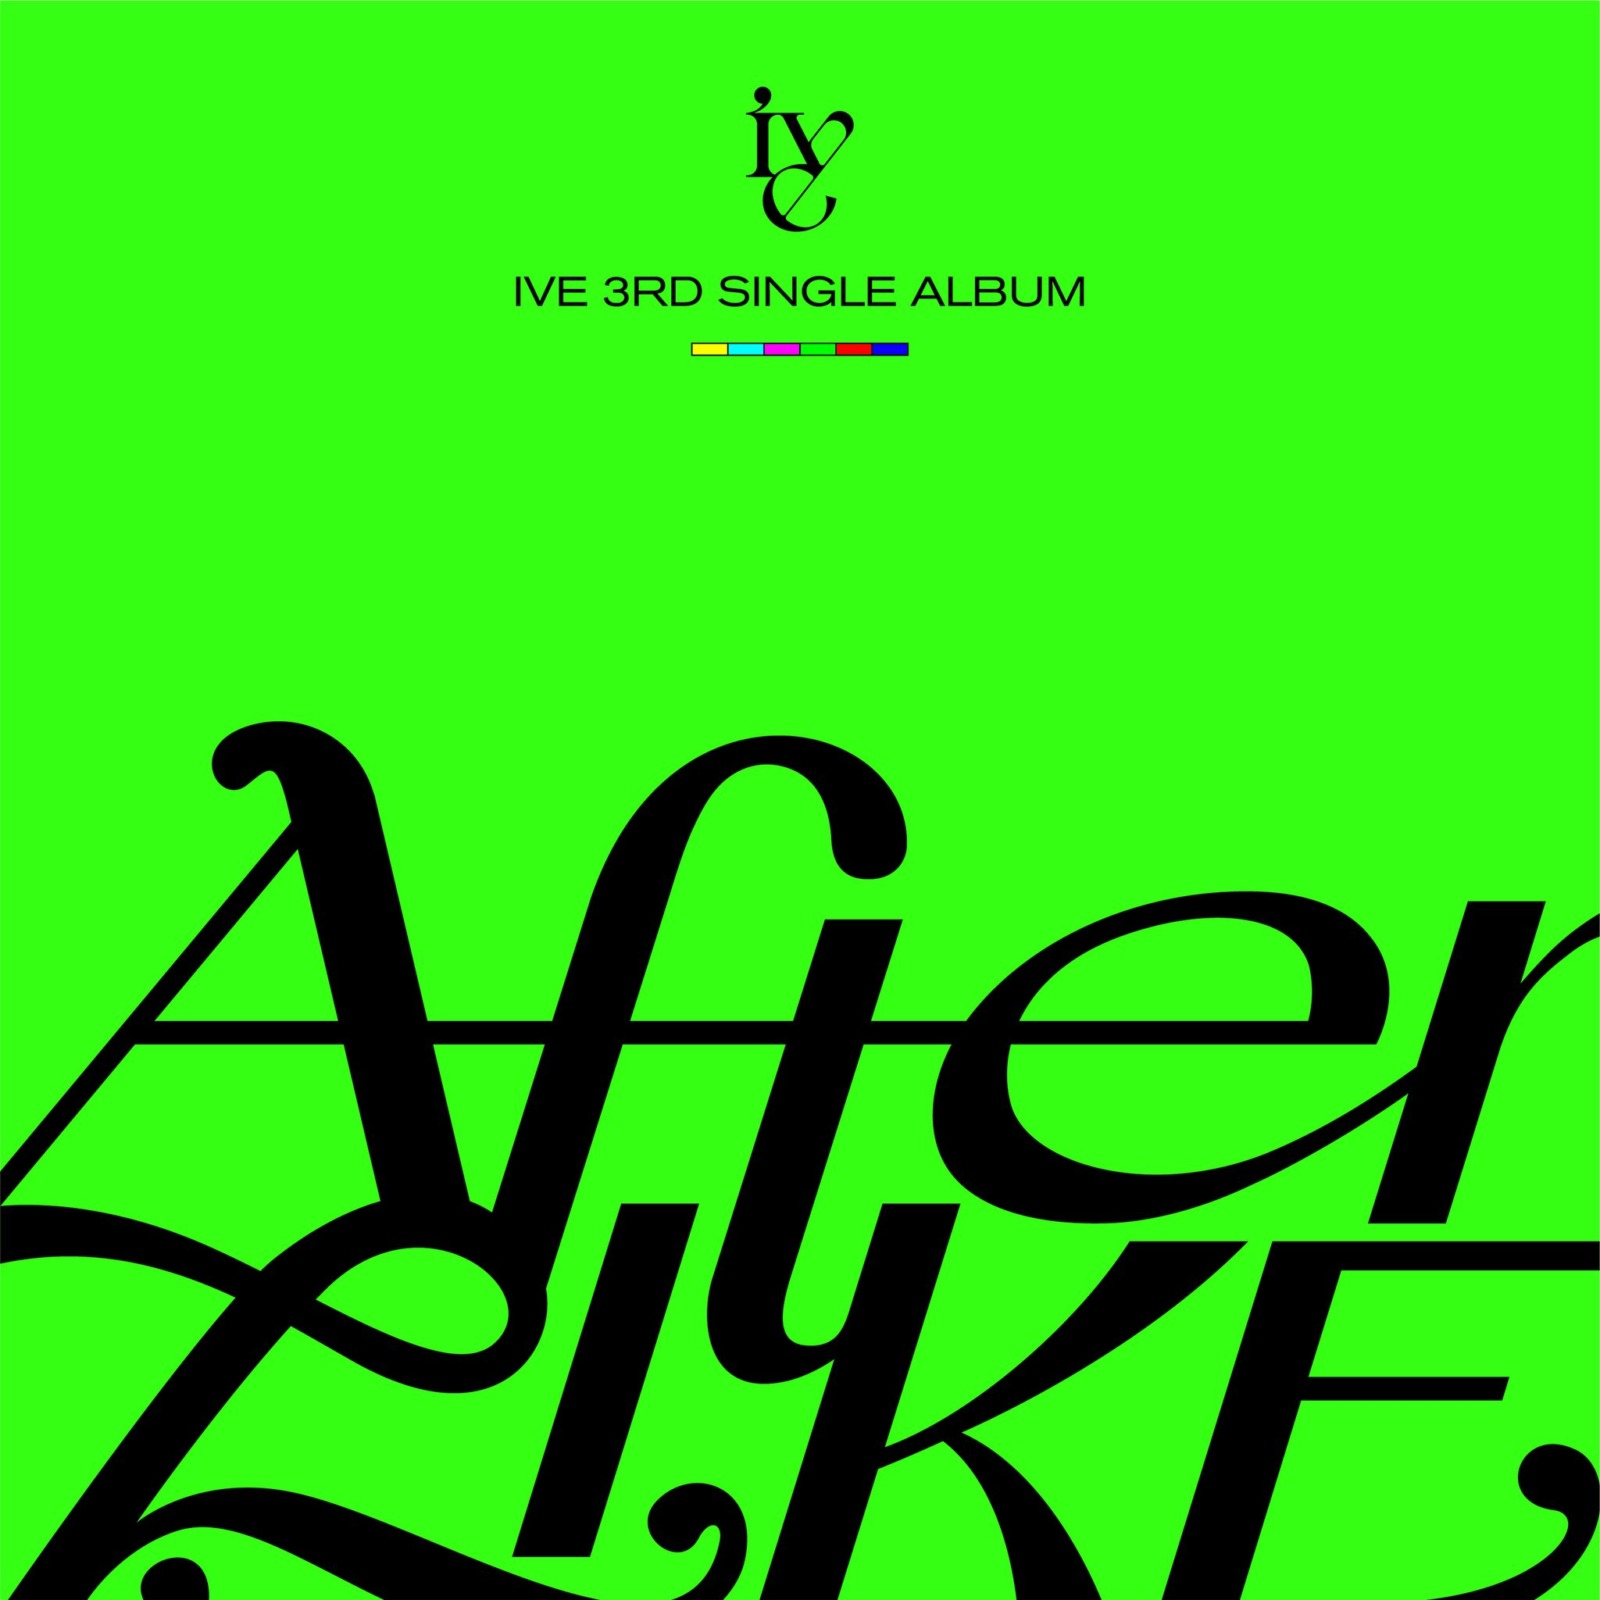 IVE (アイブ) が華やかな3rdシングル「After LIKE (アフターライク)」をリリース